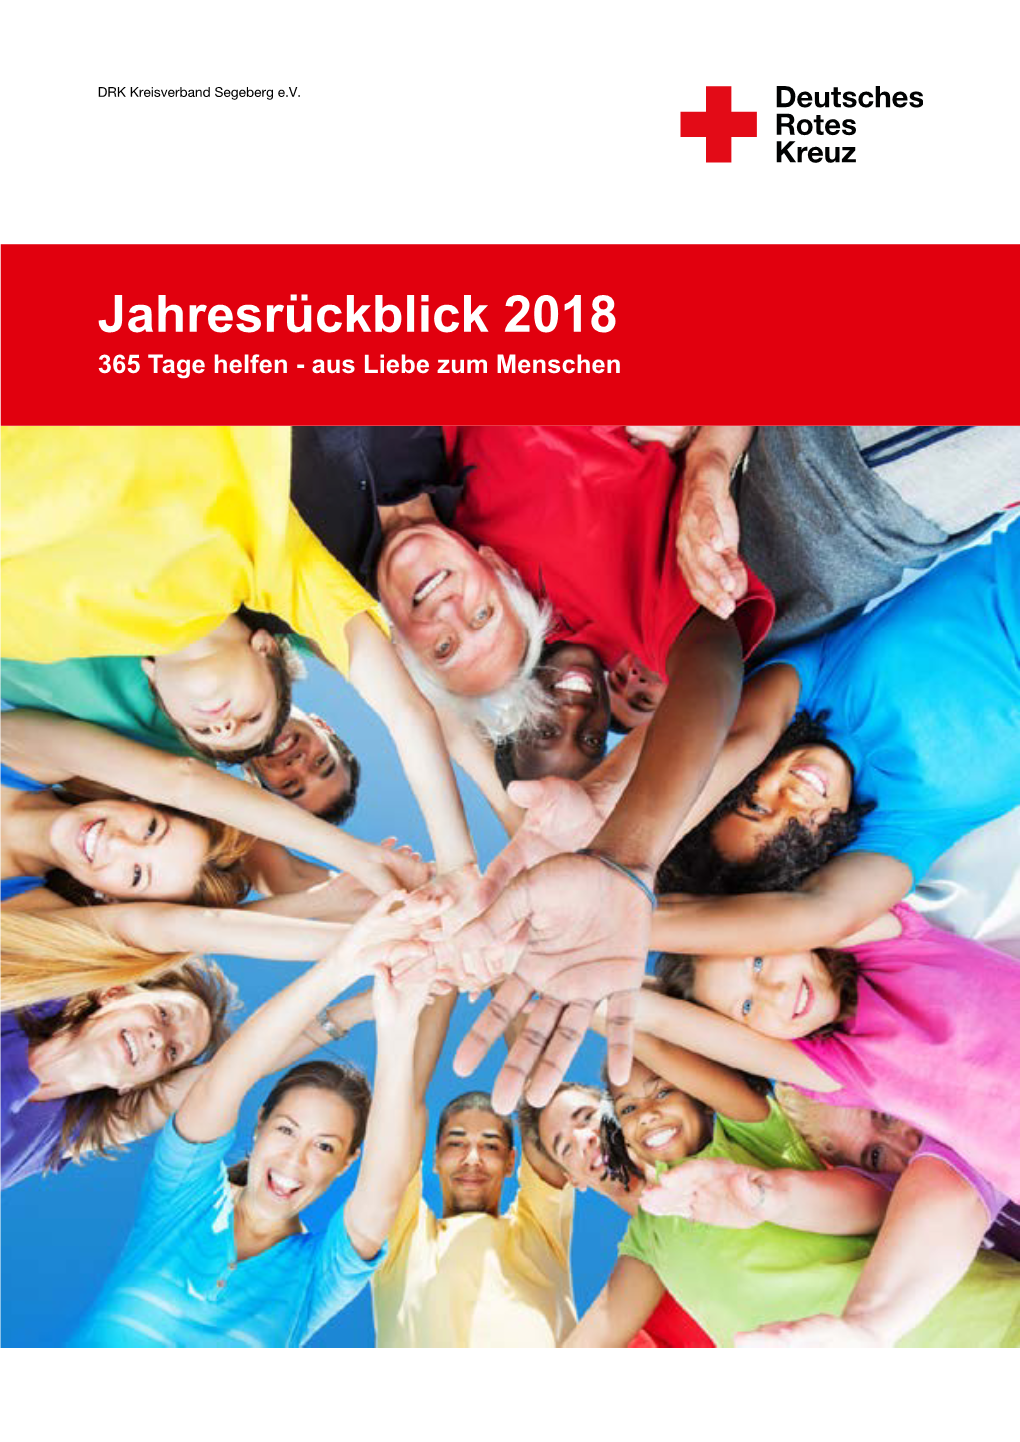 Jahresrückblick 2018 2017 365 Tage Tage Helfen Helfen - Aus Liebe Zum Menschen Herausgeber: DRK-Kreisverband Segeberg E.V